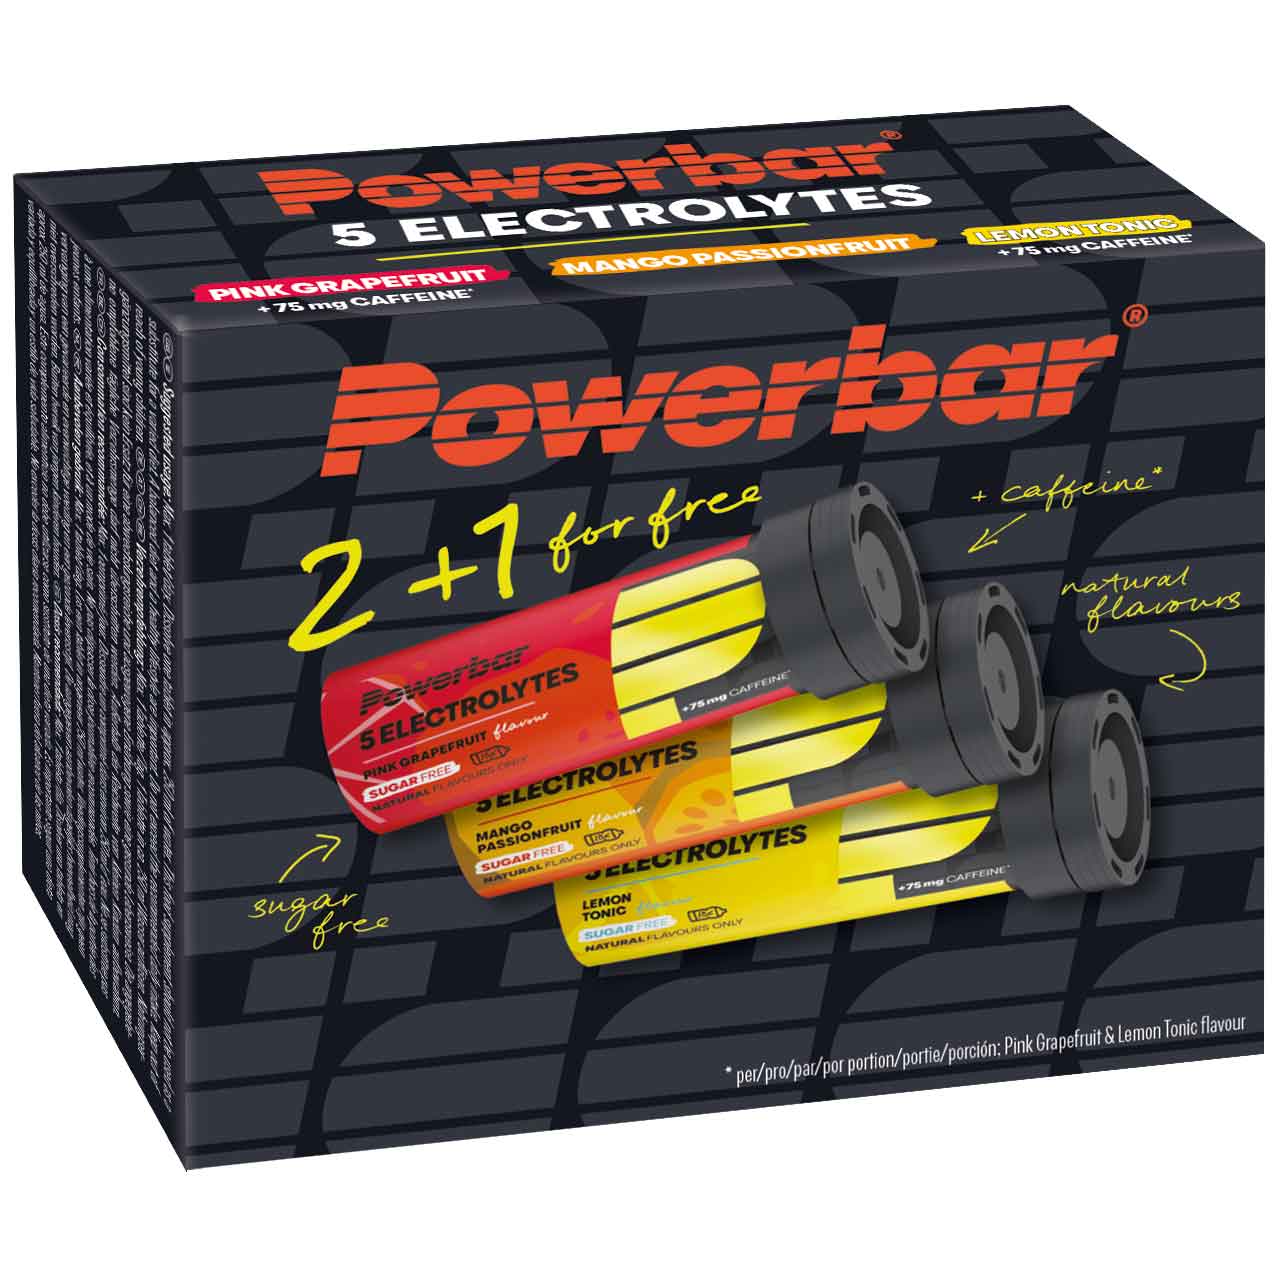 Produktbild von Powerbar 5Electrolytes Multiflavour Pack - Sports Drink Brausetabletten - 2 + 1 gratis (30 Stück)